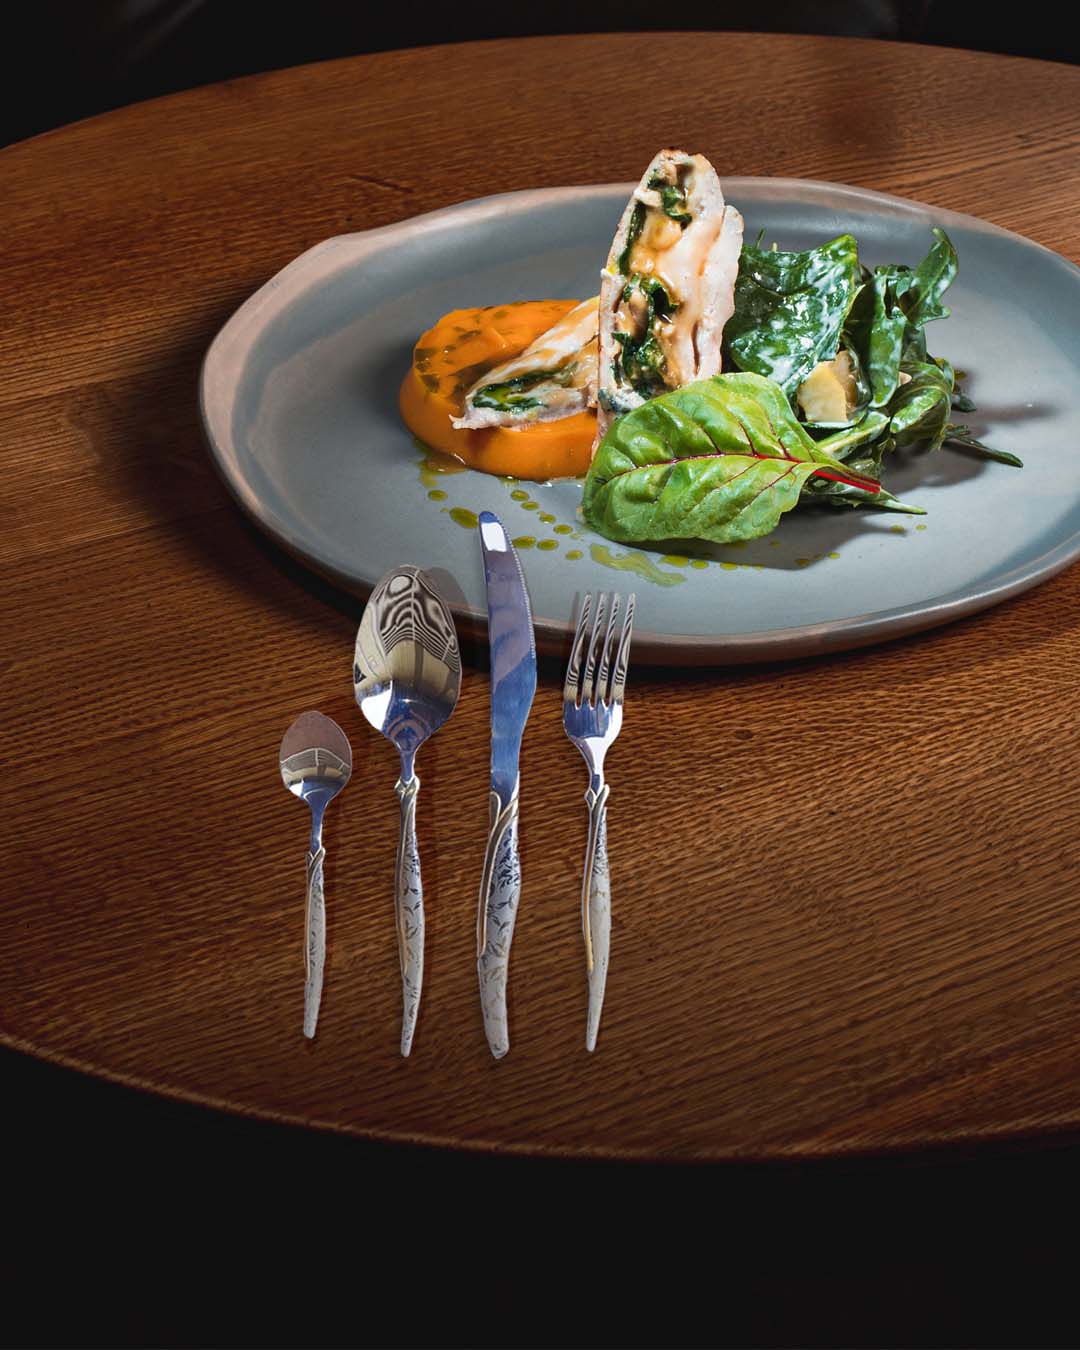 Dinner Forks 6pack Cutlery Set Stainless Steel BPS-004B